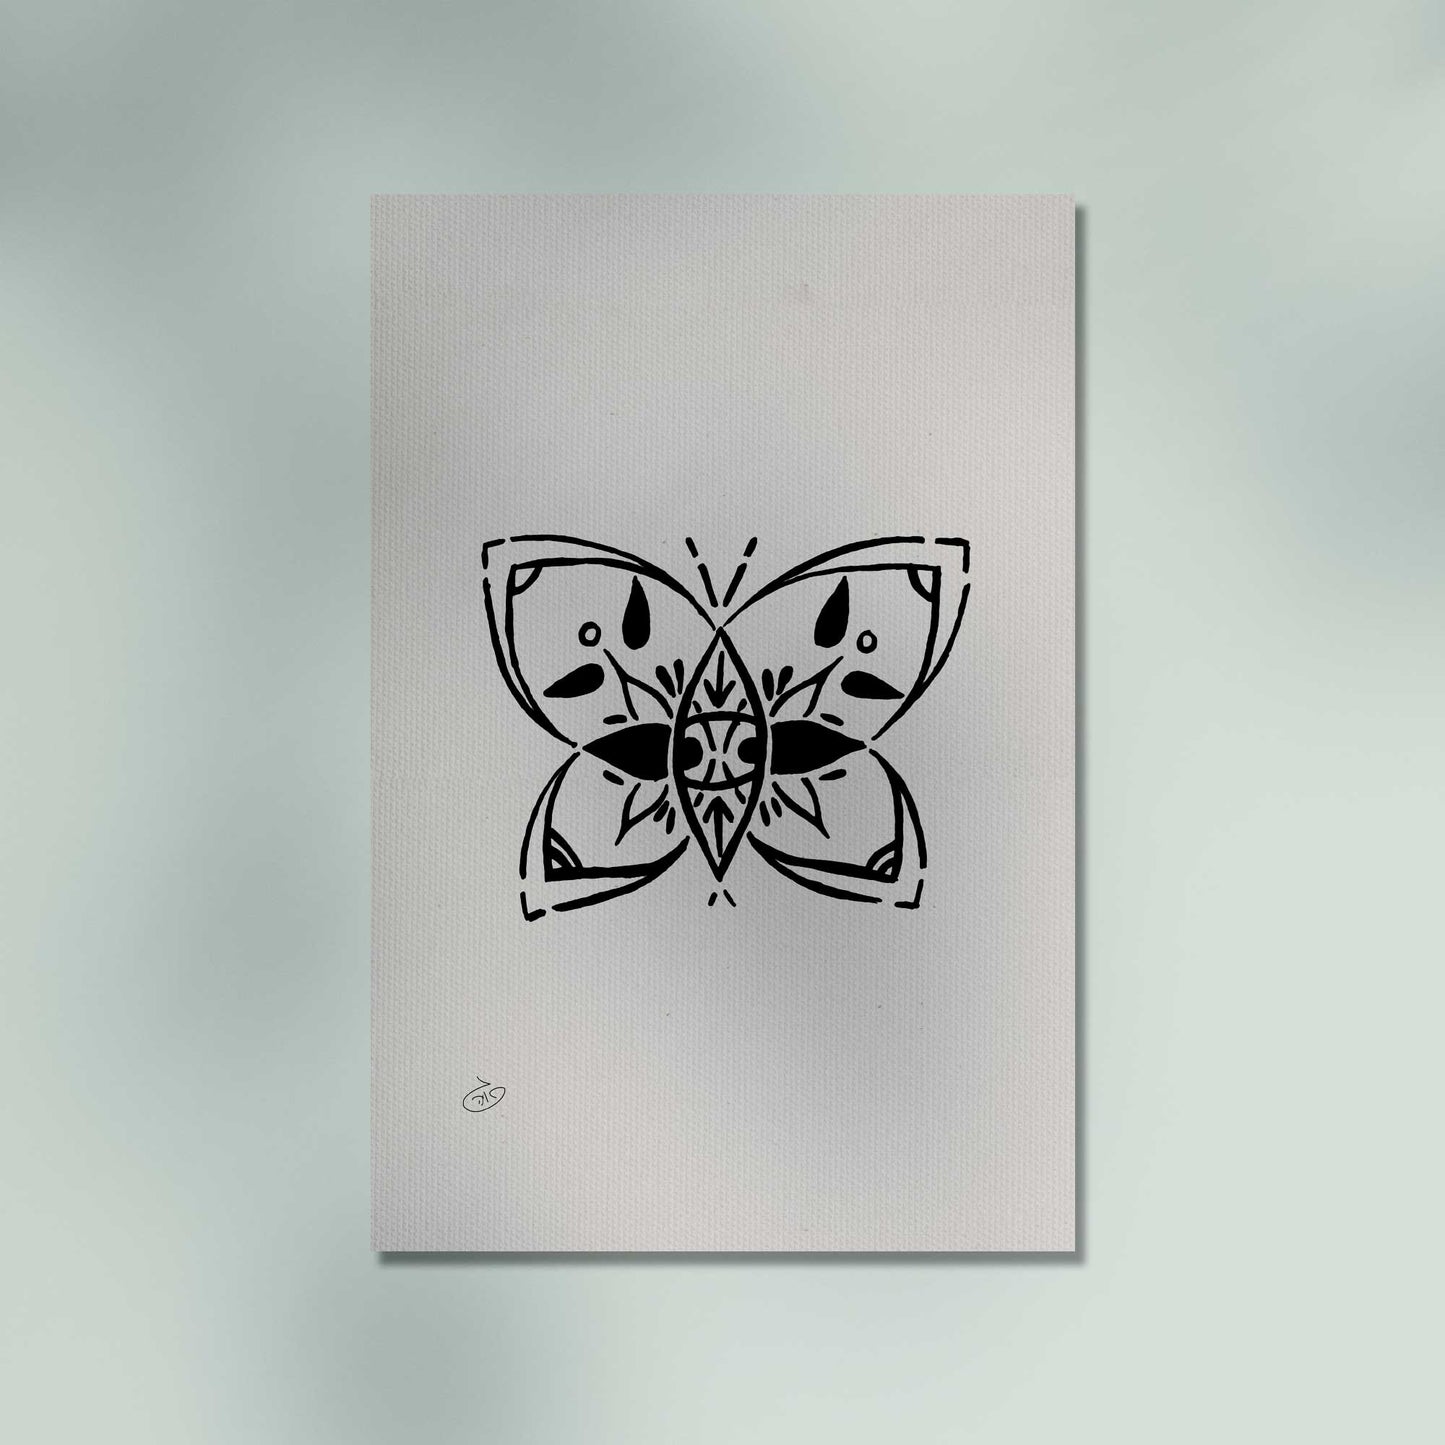 פוסטר Butterfly Poster ציור מקורי של גאיה המקדם את המודעות לאלימות בין בני זוג בכלל וכלפי נשים בפרט